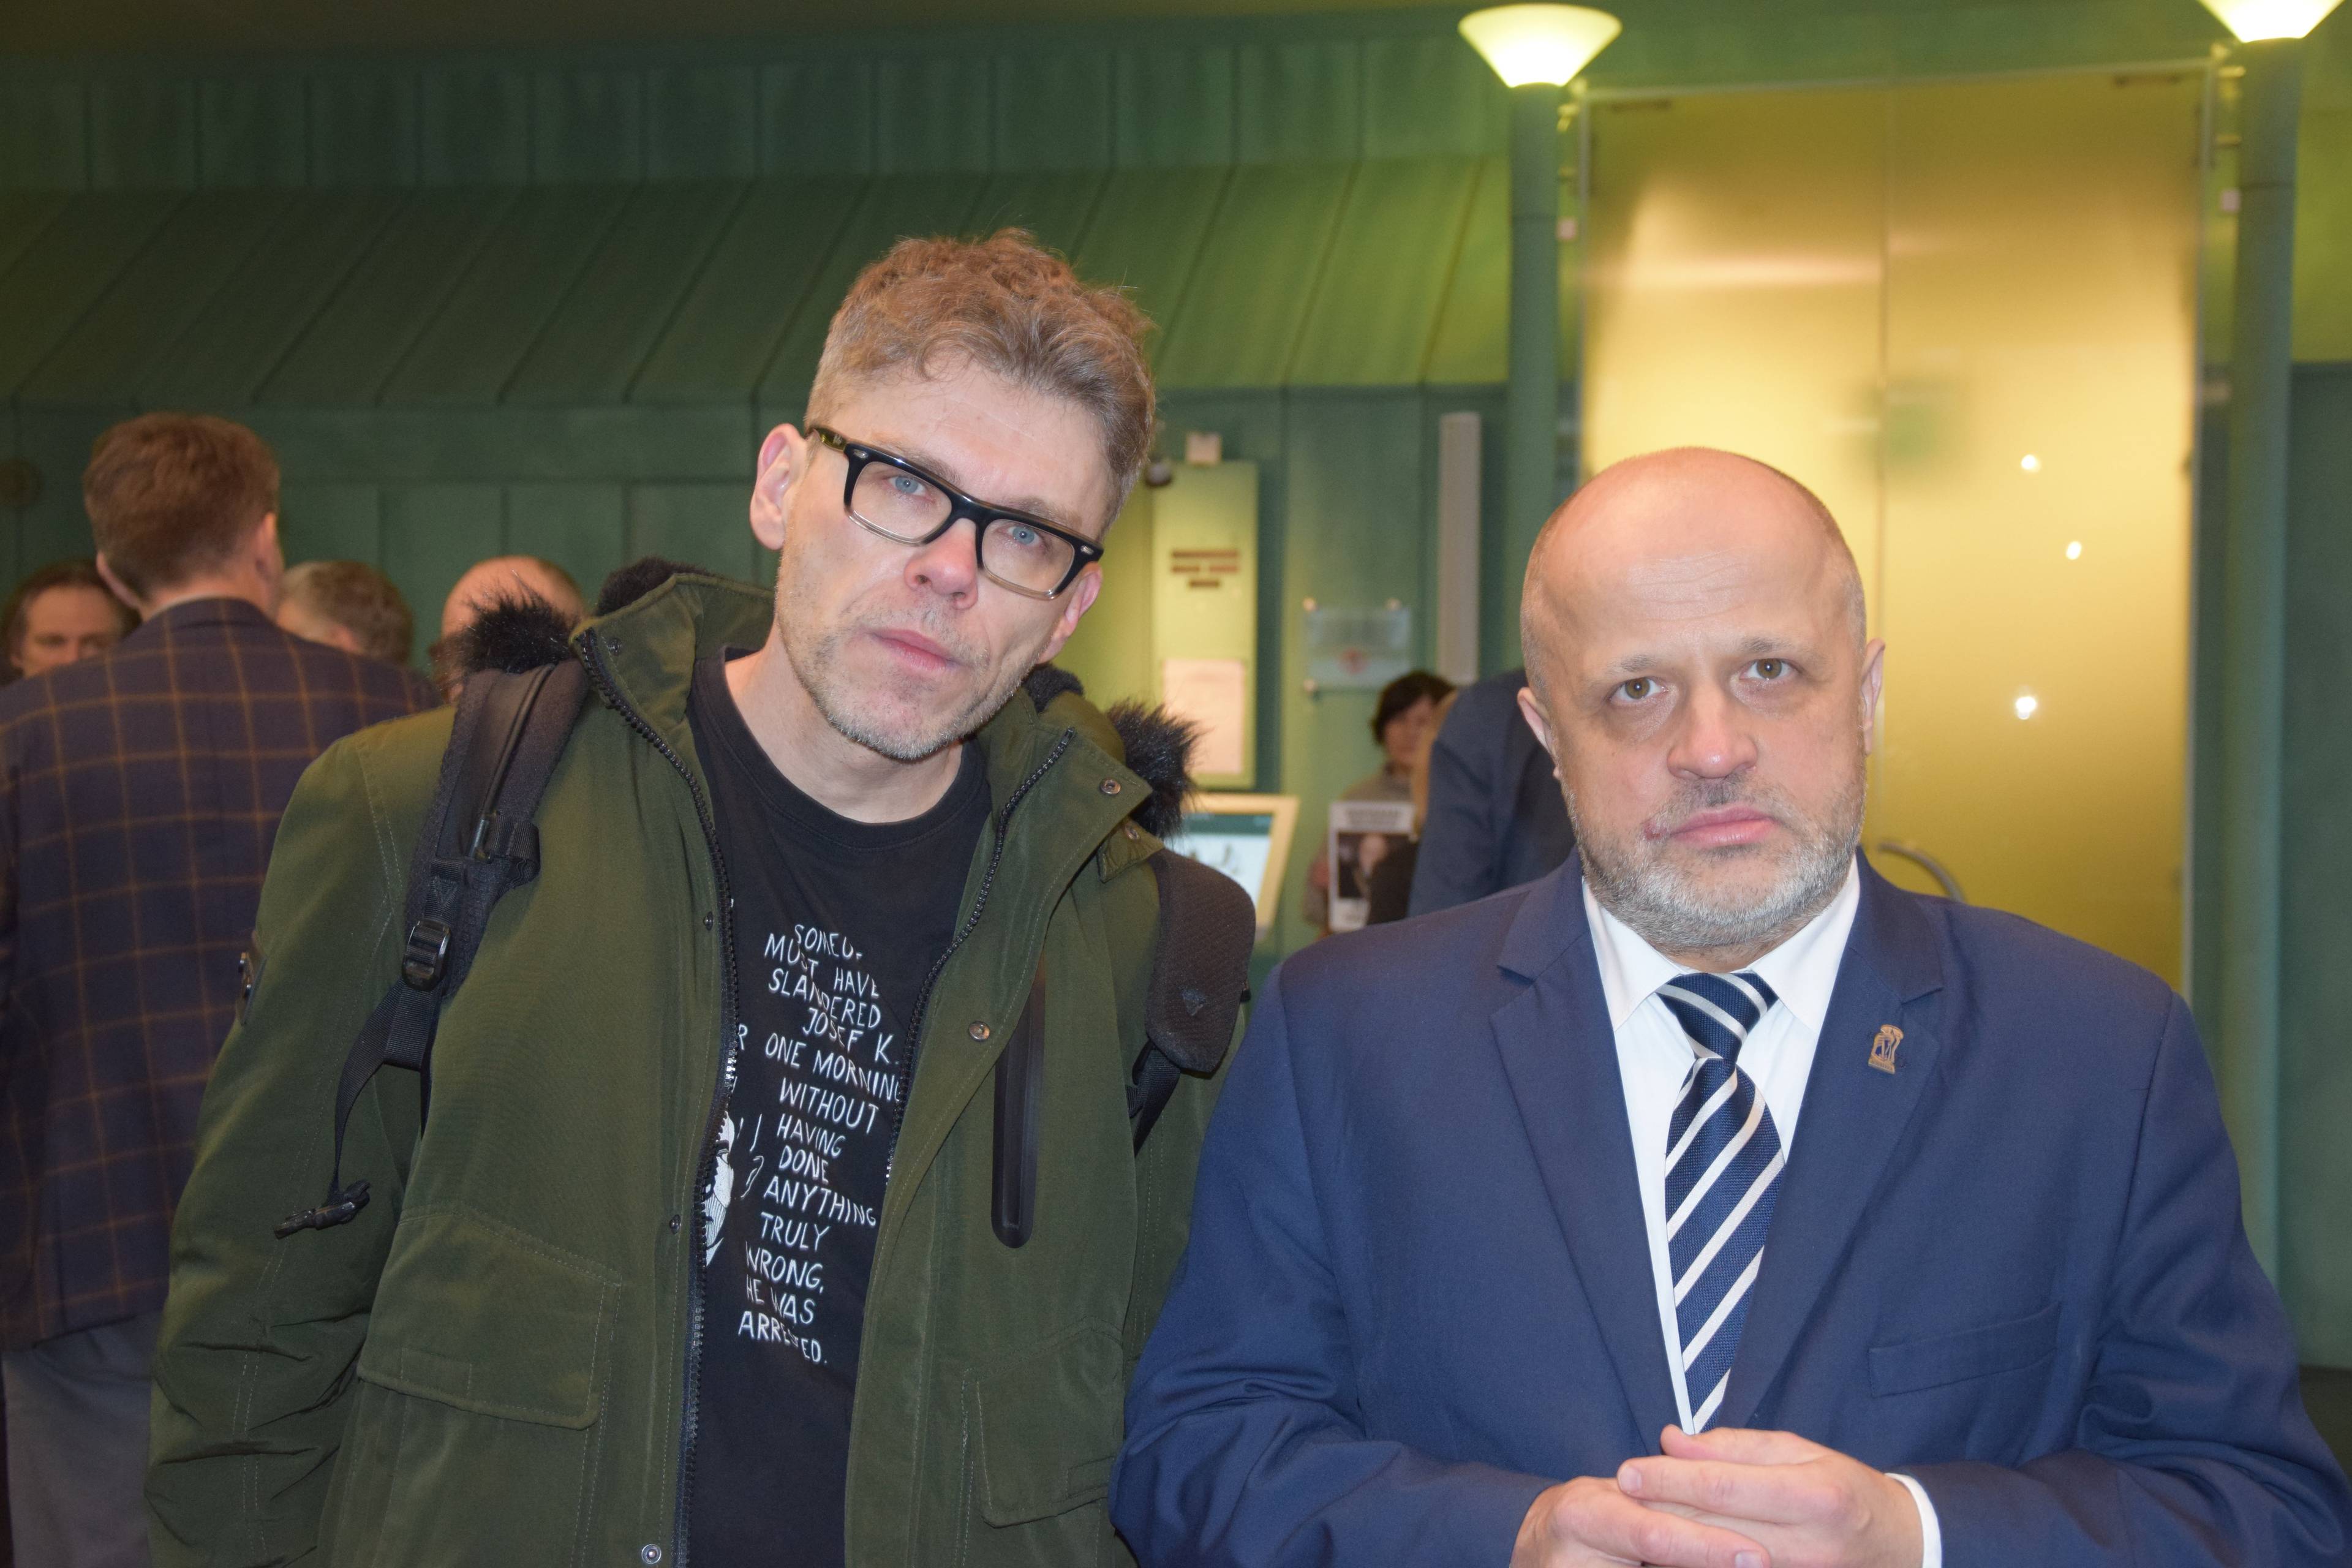 Dwaj mężczyźni, Igor Tuleya i Piotr Gąciarek, stoją obok siebie